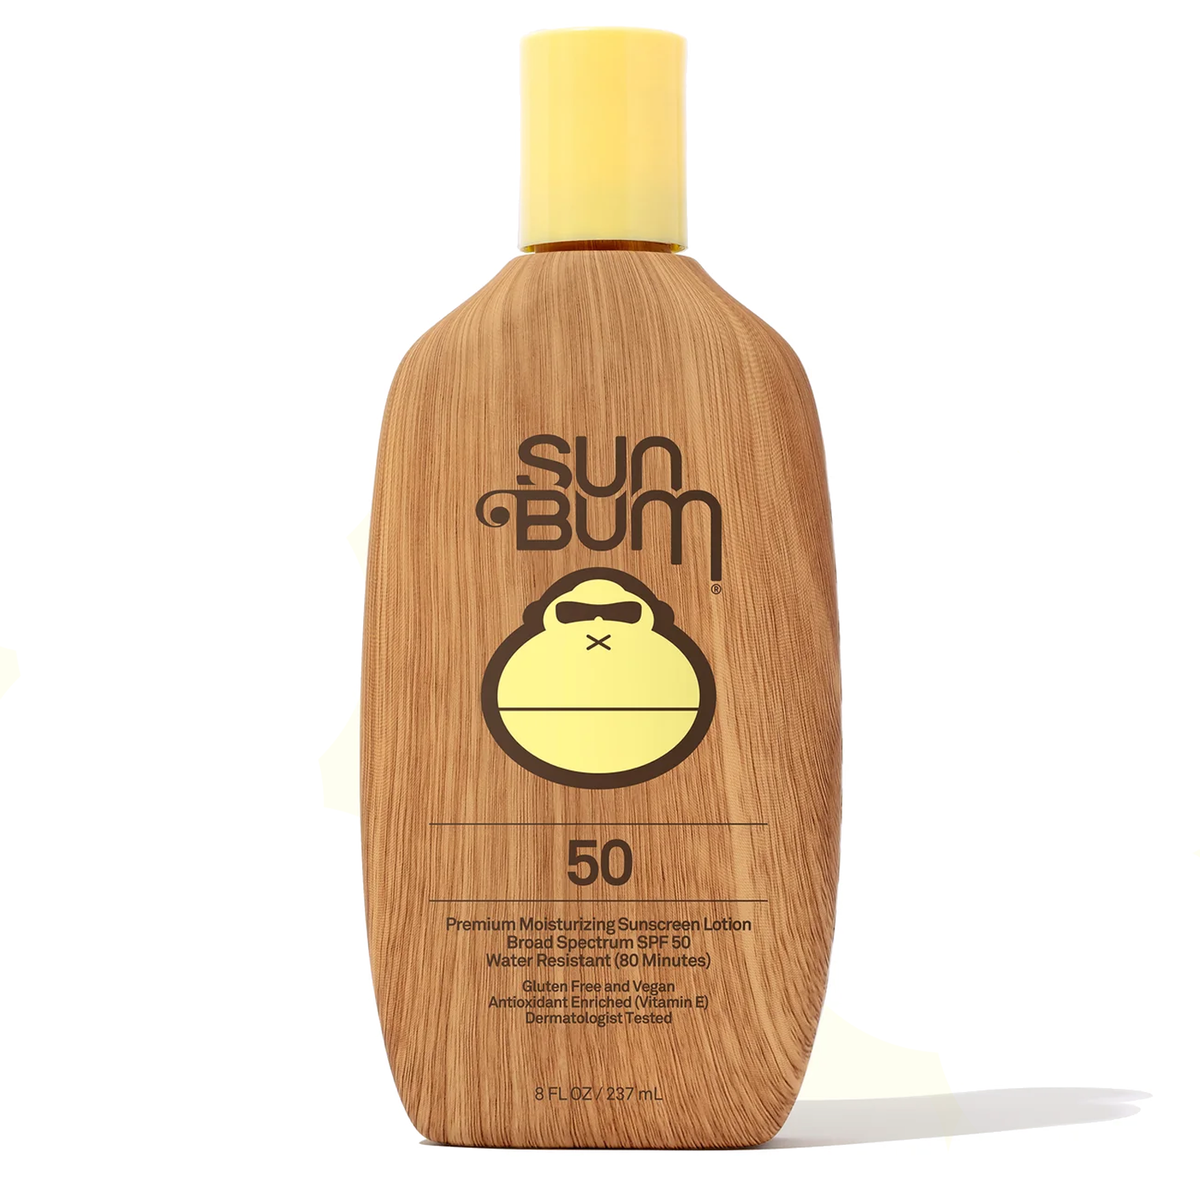 Protección solar Sun Bum SPF 50 original